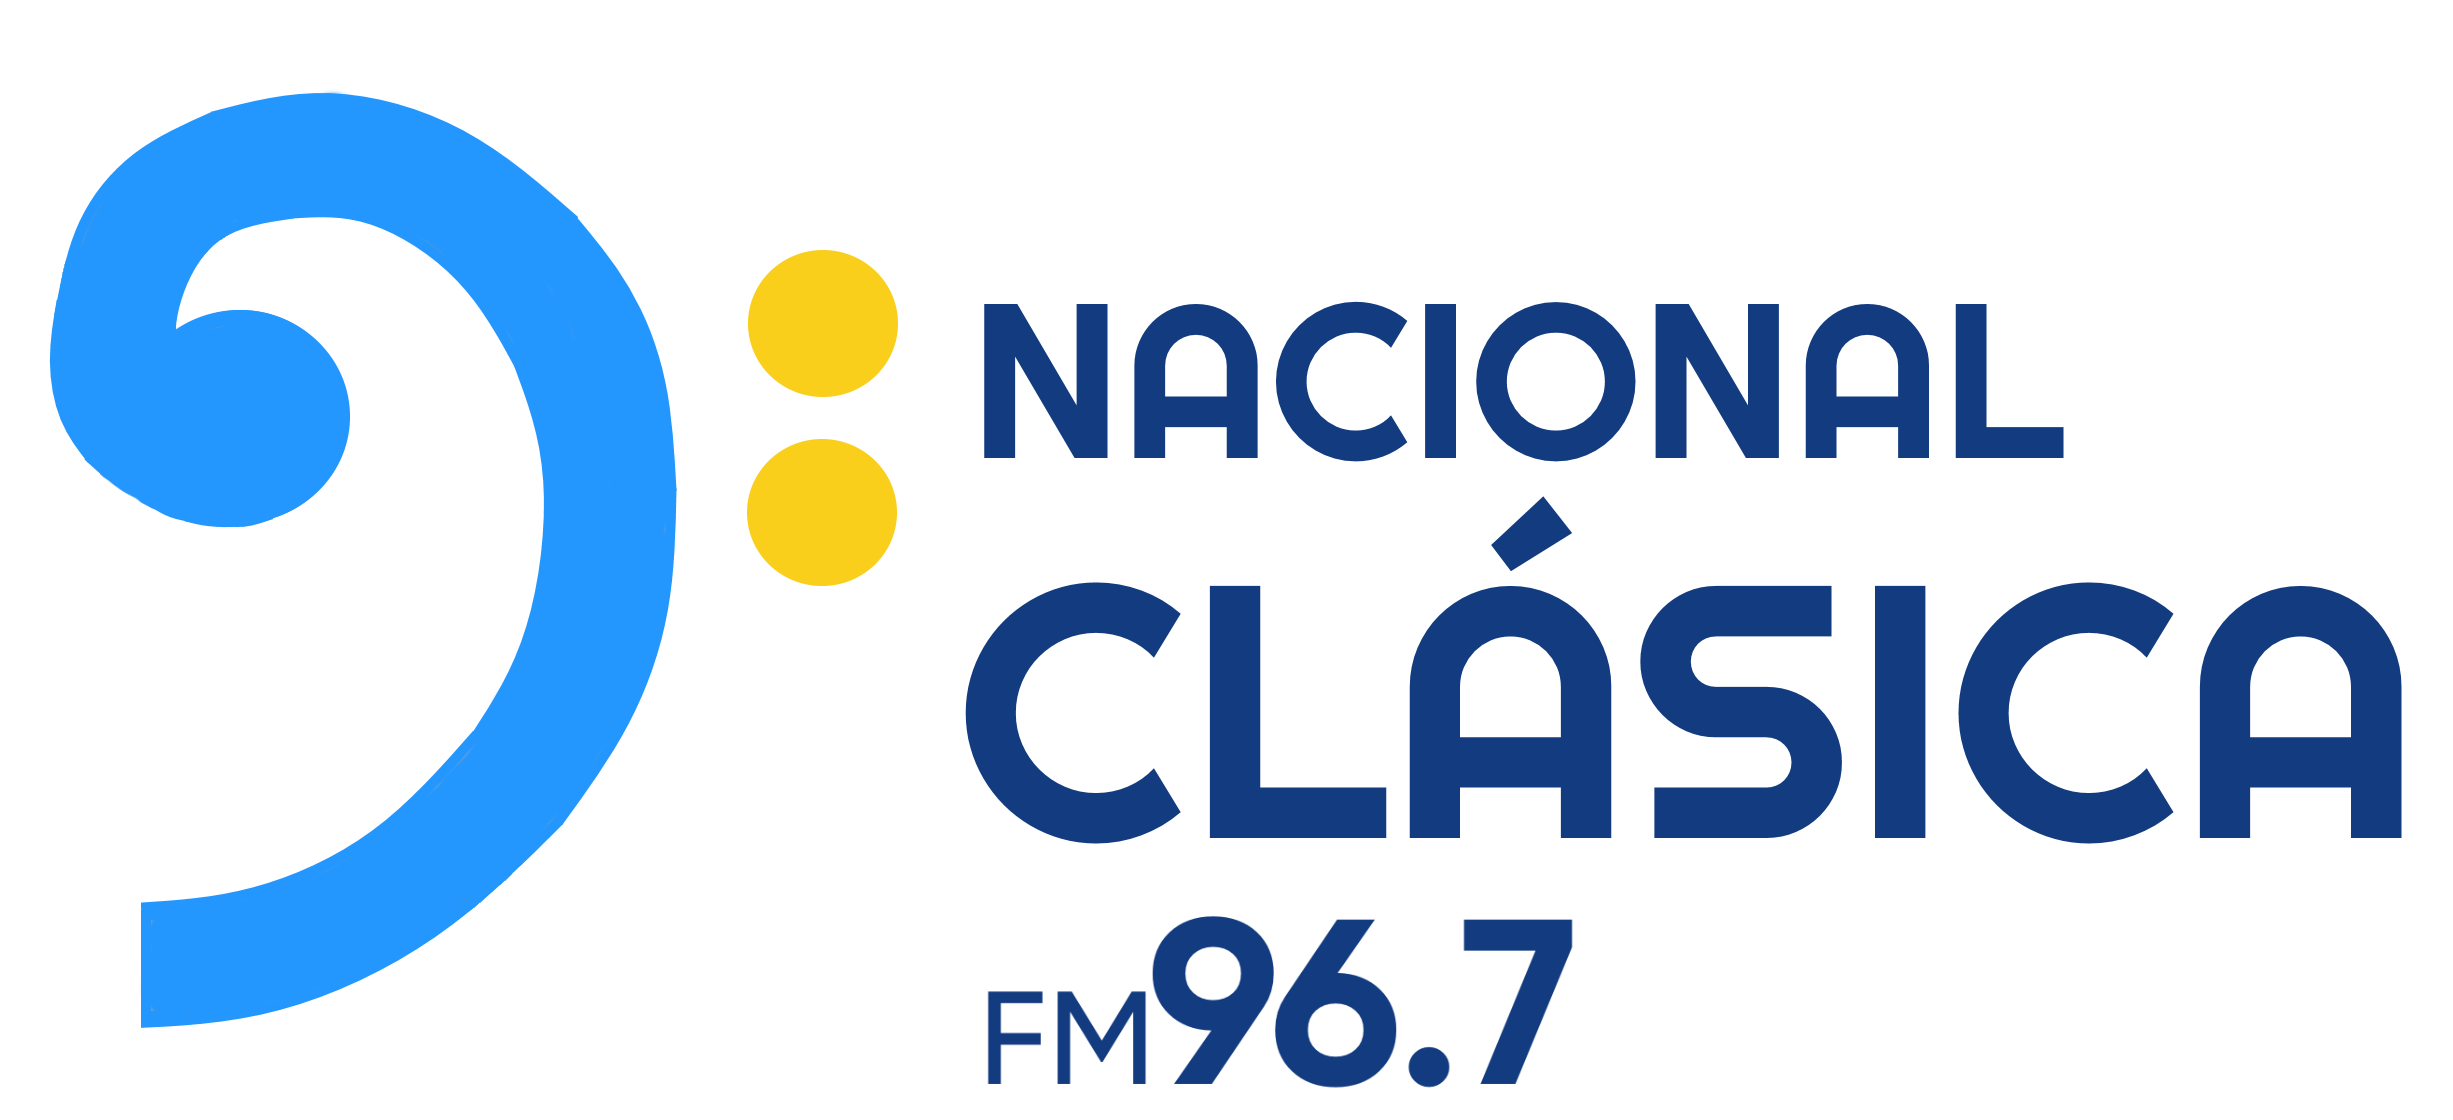 Radio Nacional Clásica - Wikipedia, la enciclopedia libre